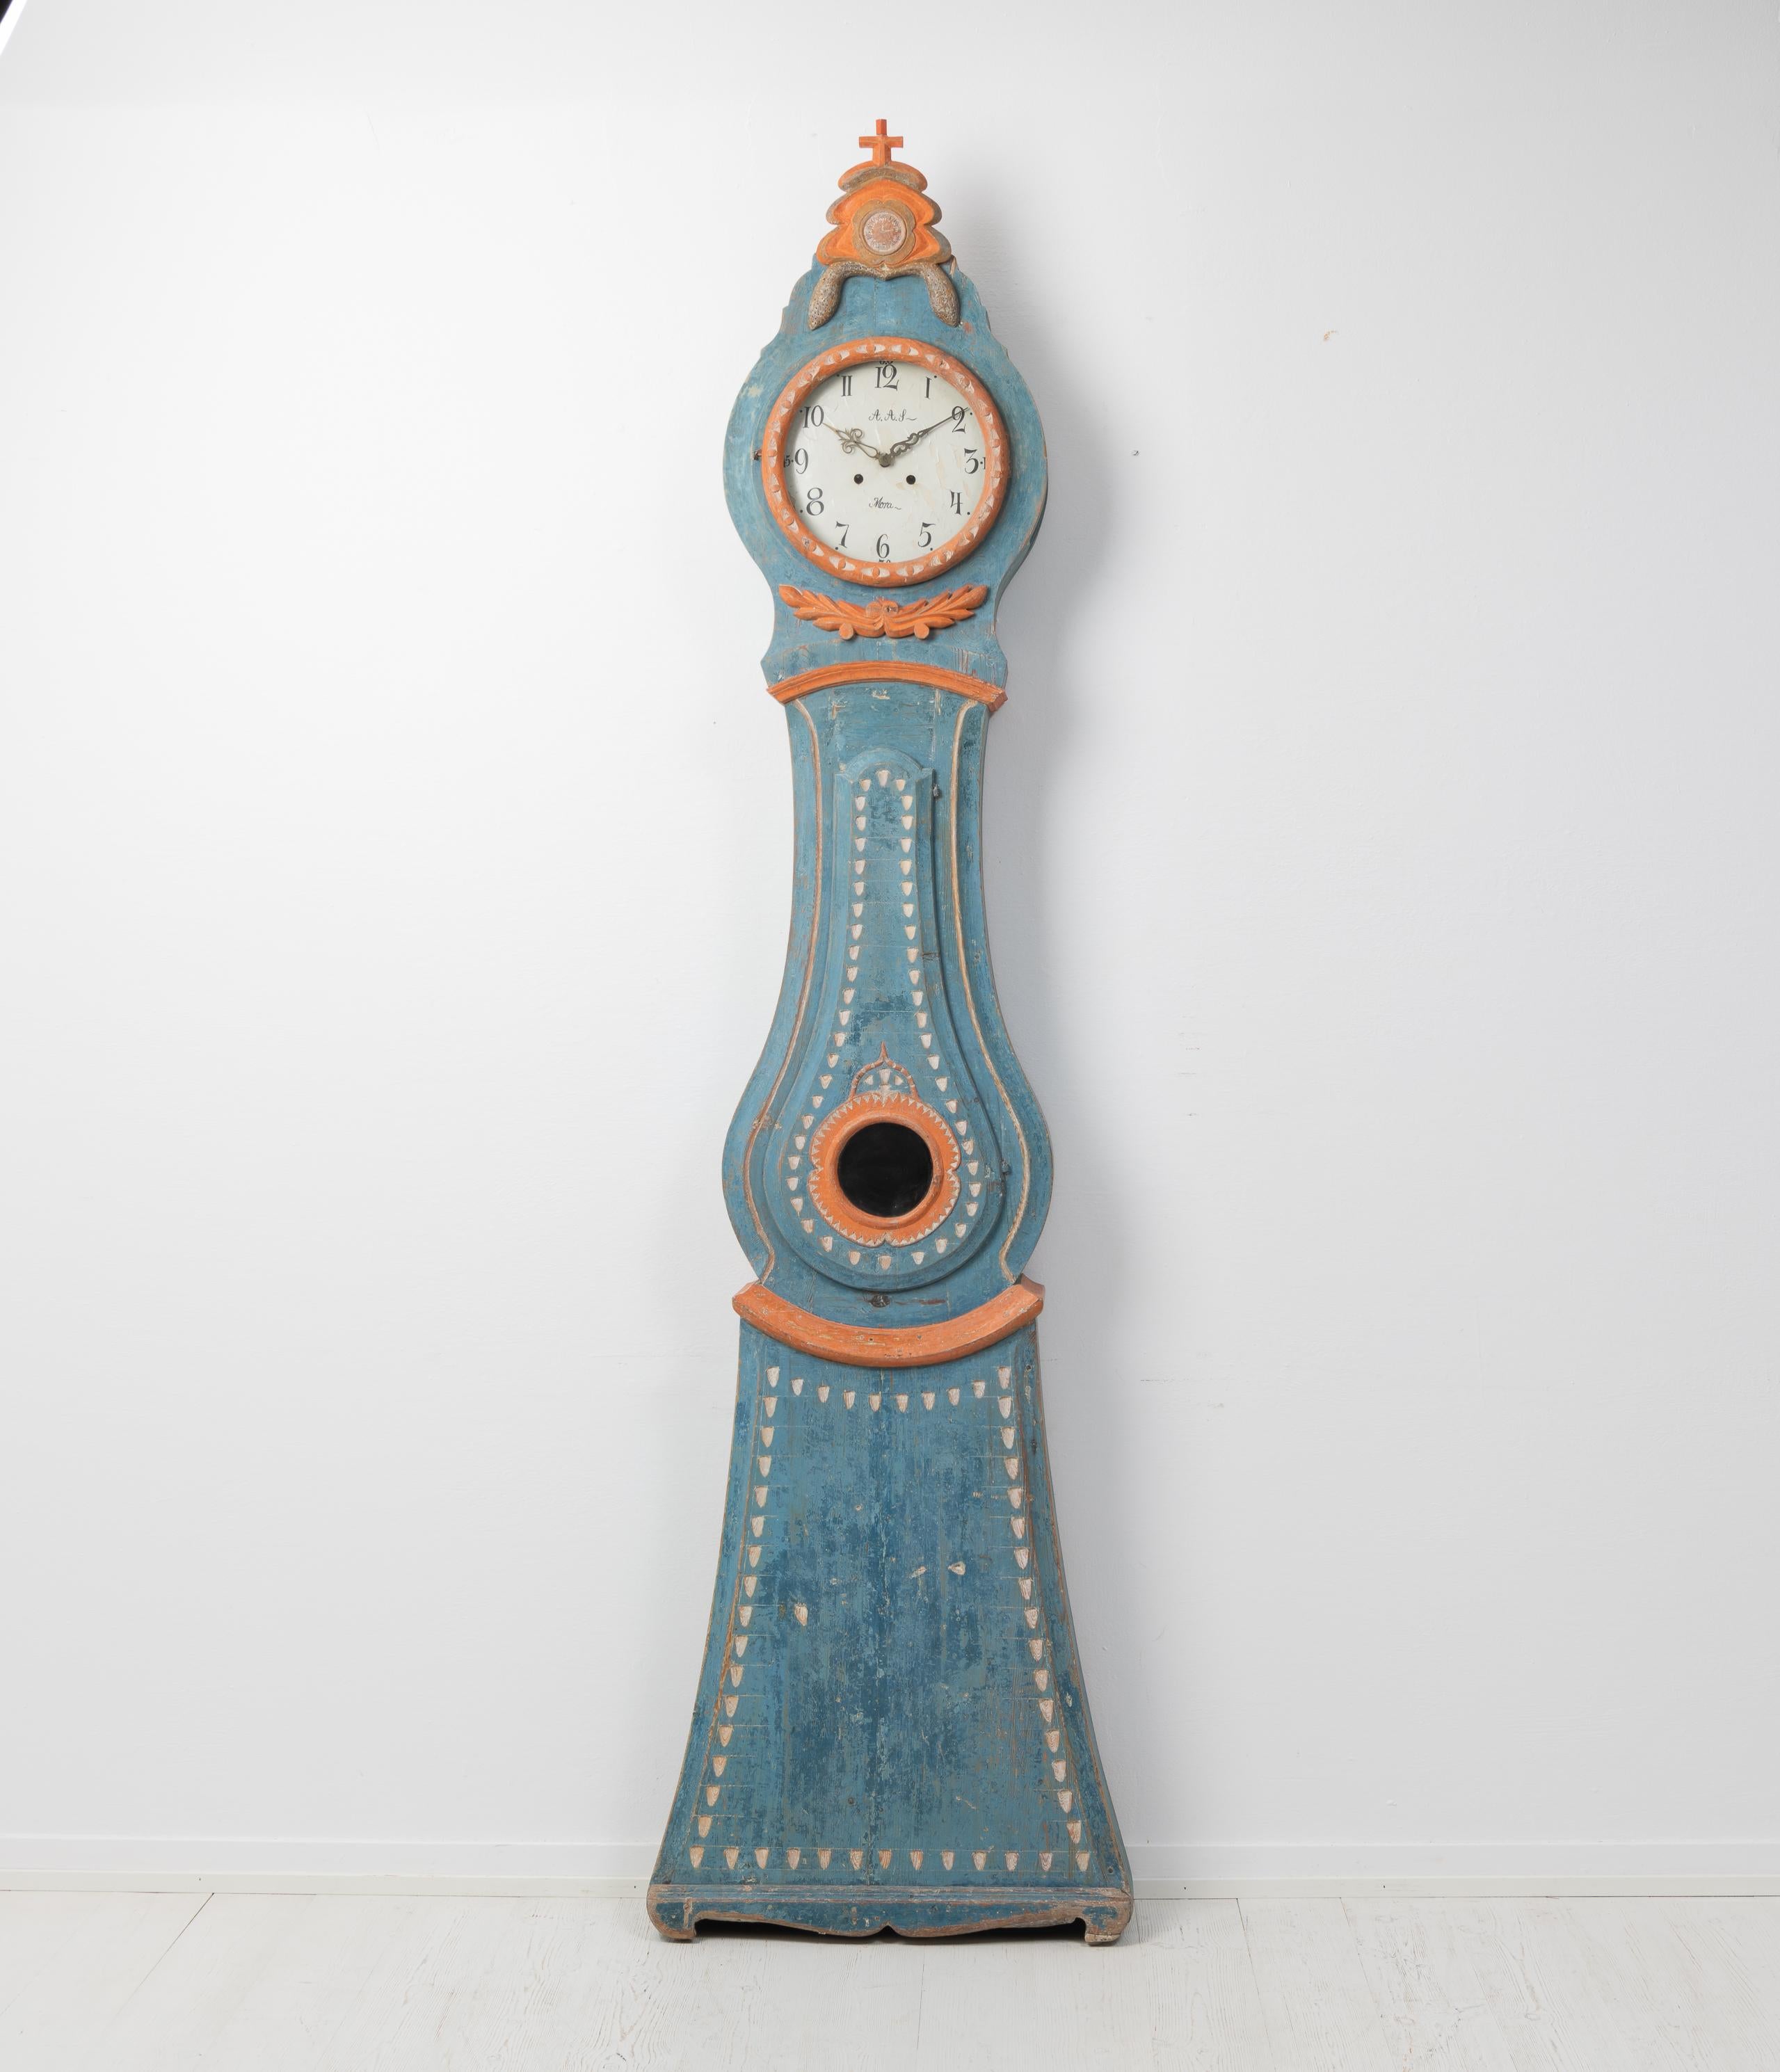 Echte antike Standuhr aus Nordschweden. Die Uhr stammt aus der Zeit um 1820 und hat ein sehr gut verarbeitetes und elegantes Gehäuse aus bemalter Kiefer. Der Lack ist der erste Originallack und hat eine ungewöhnliche Farbgebung. Abnutzung und Patina